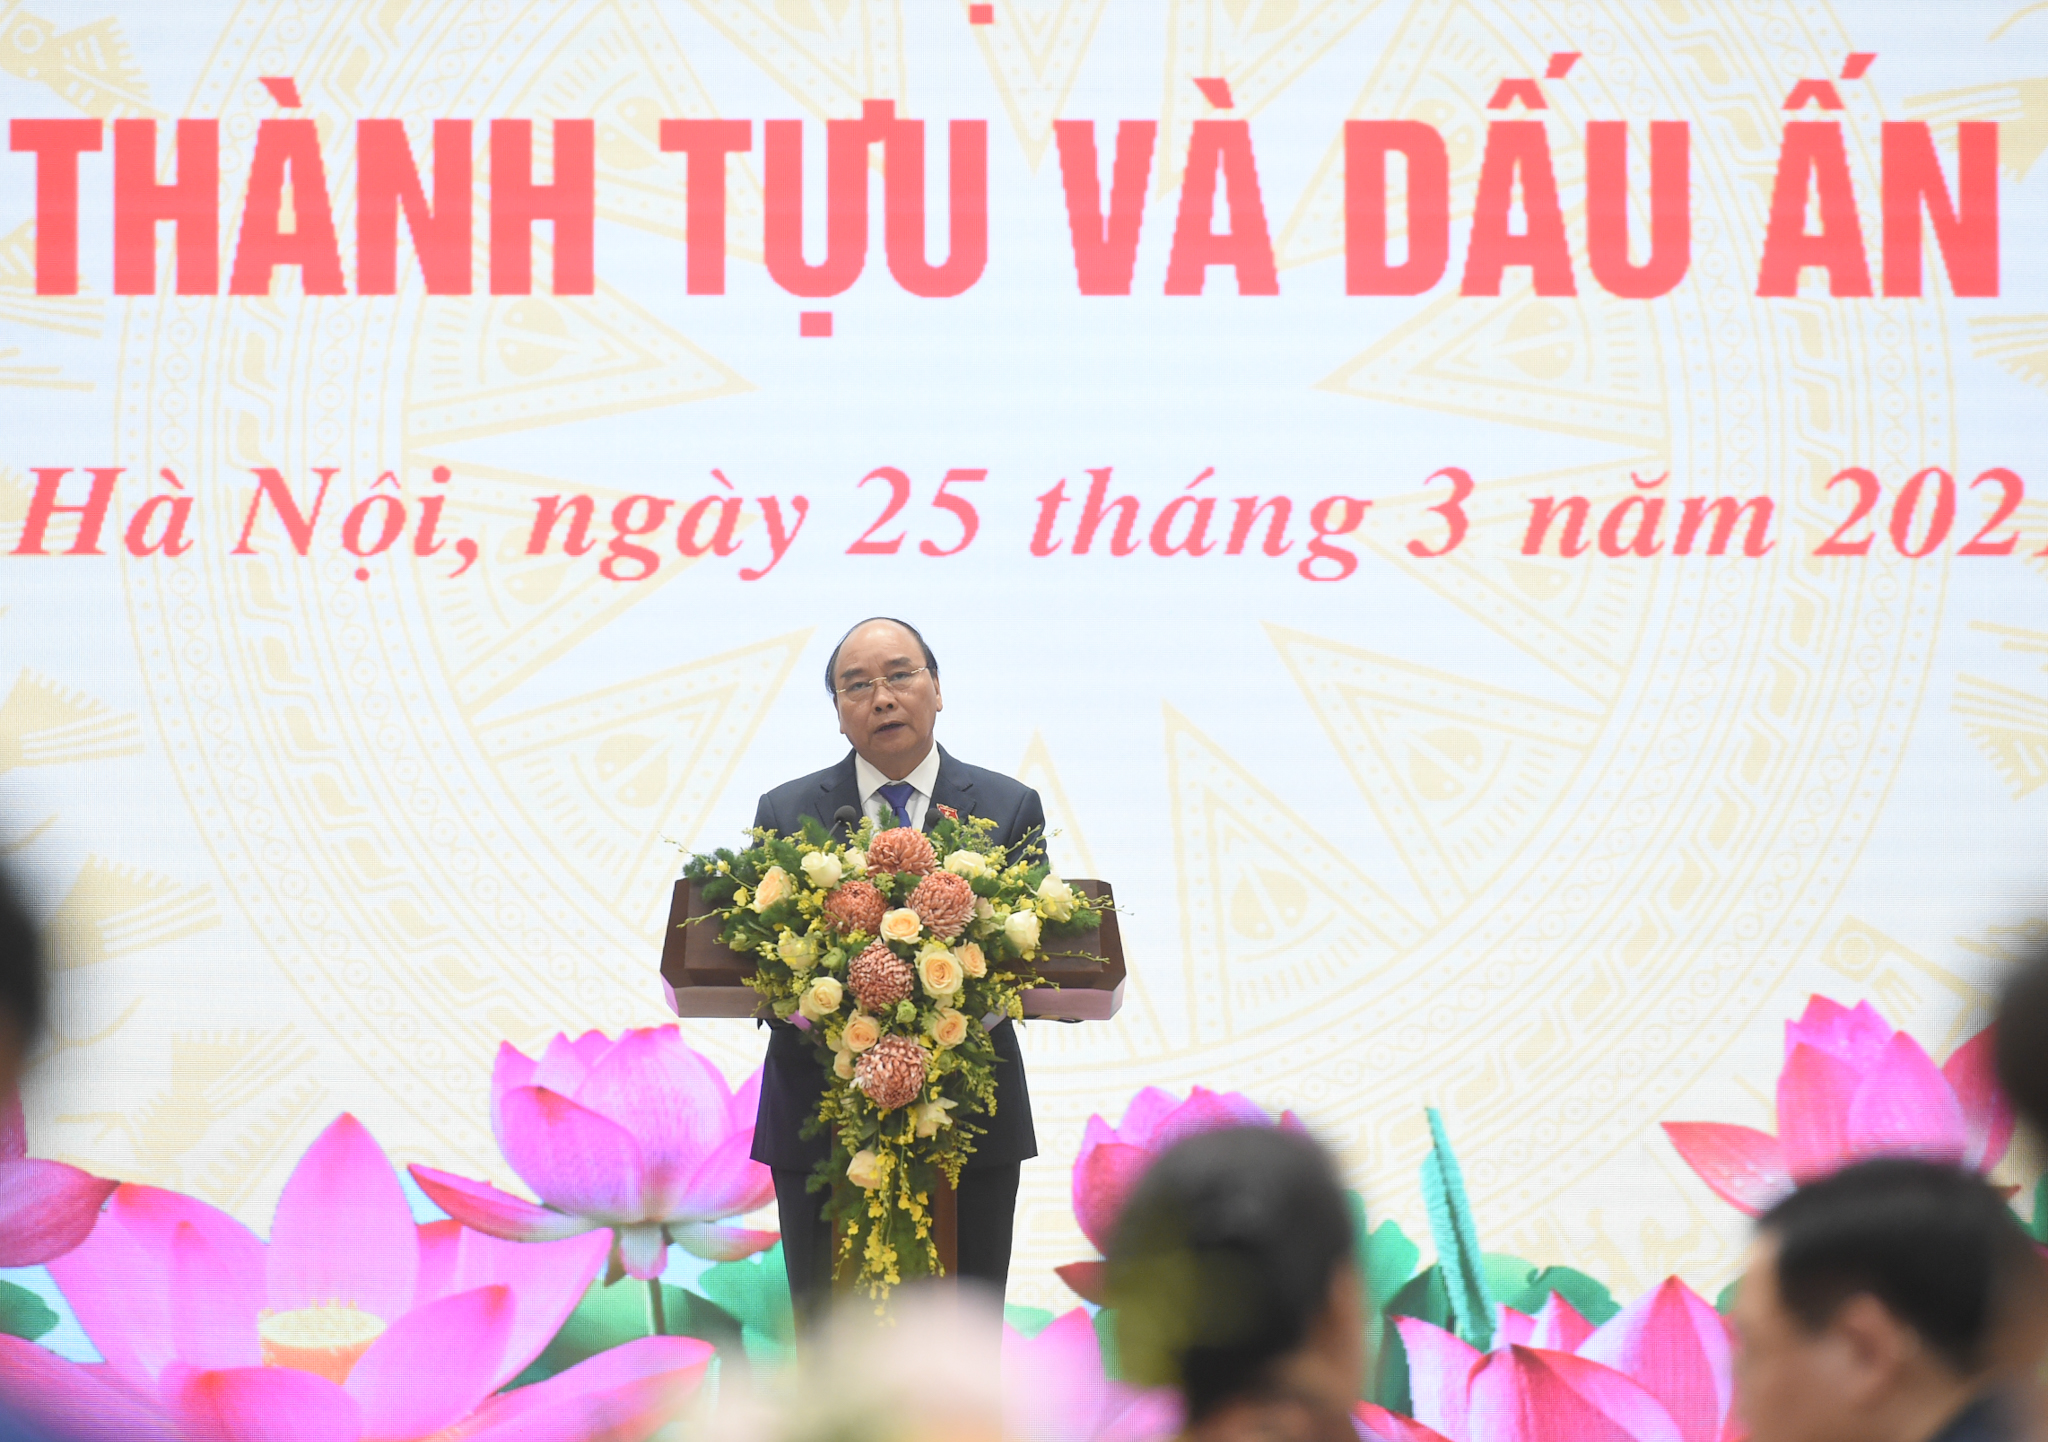 Thủ tướng Nguyễn Xuân Phúc chia sẻ, “5 năm qua là một nhiệm kỳ nhiều cảm xúc, là những năm tháng đáng nhớ nhất của cá nhân tôi đến thời điểm này…”. Ảnh: VGP/Quang Hiếu